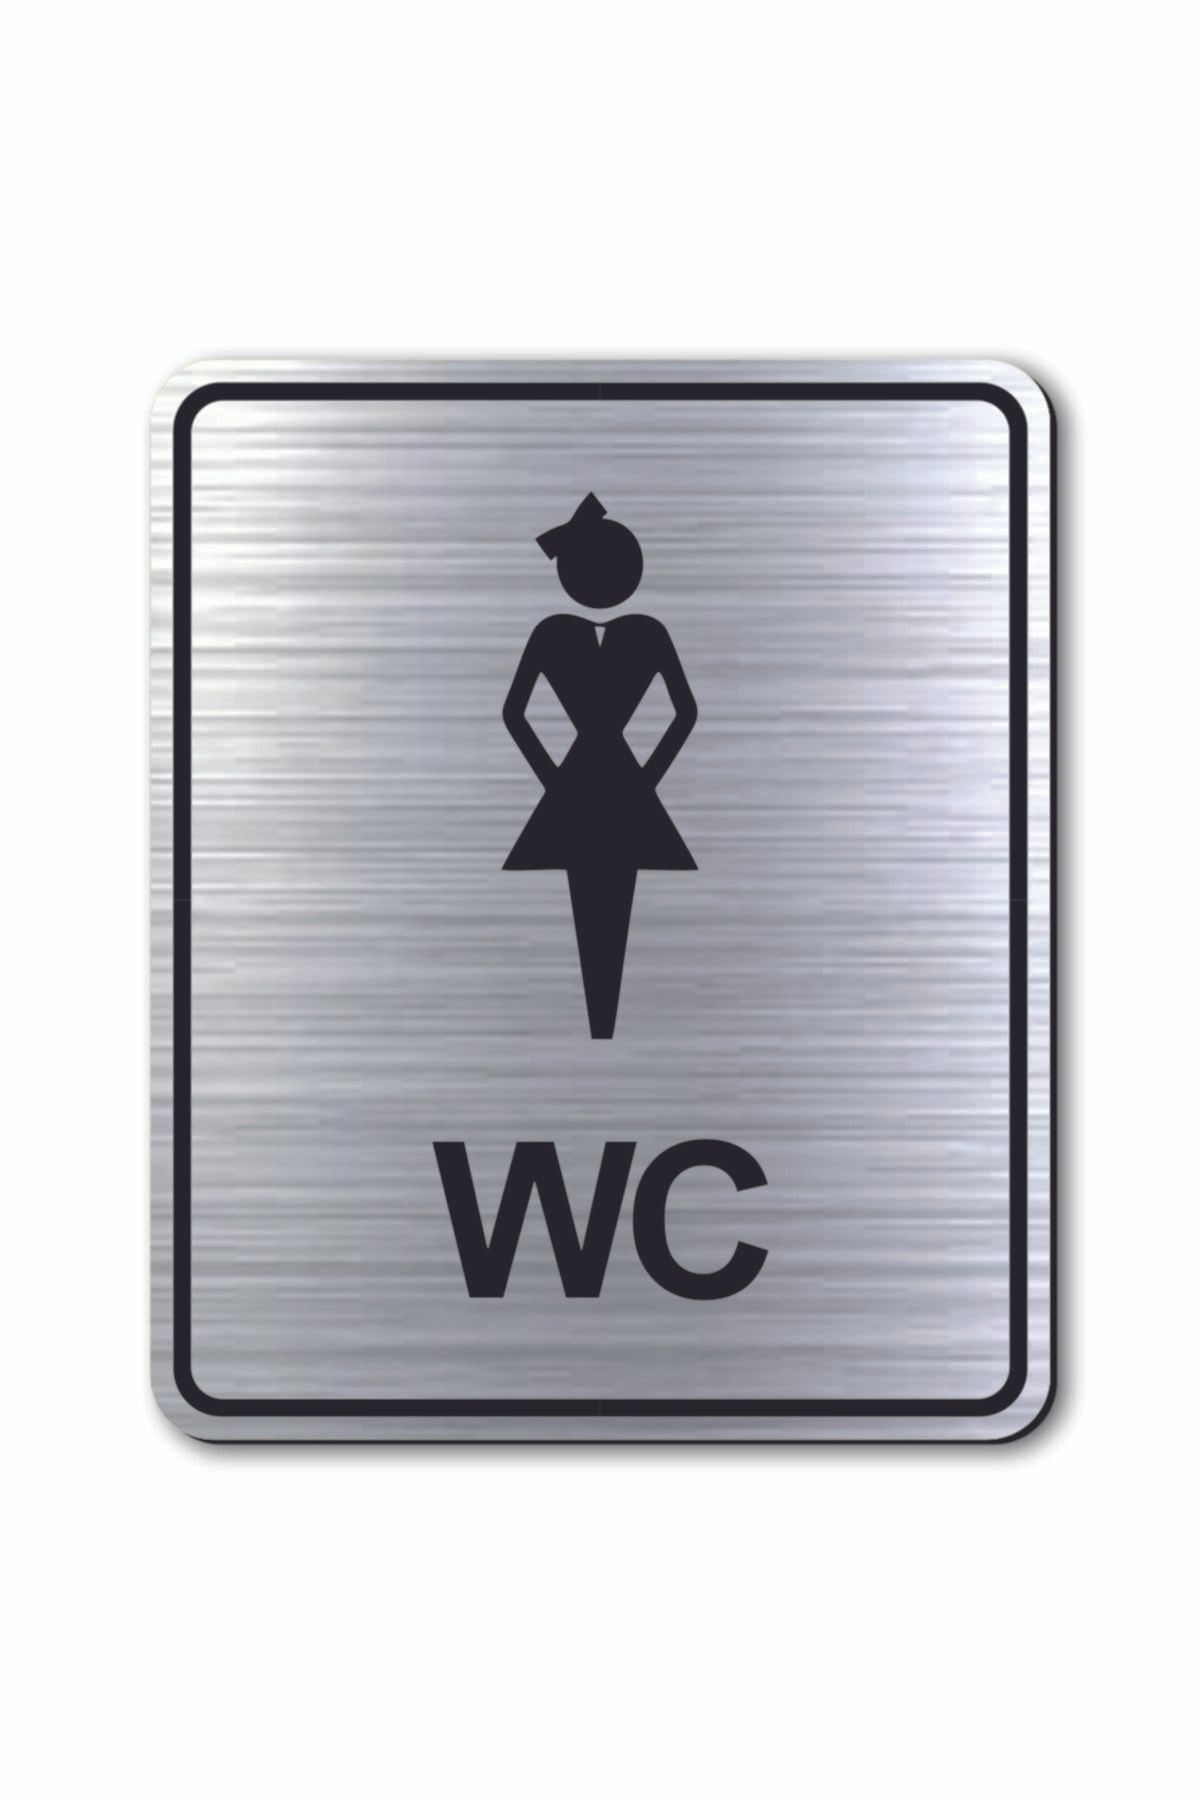 hediyemyoldaa Wc Kadın Tuvalet Kapı Uyarı - Yönlendirme Levhası Gümüş Renkli Oval 10 Cm X 12 Cm Cm Rezopal Levha